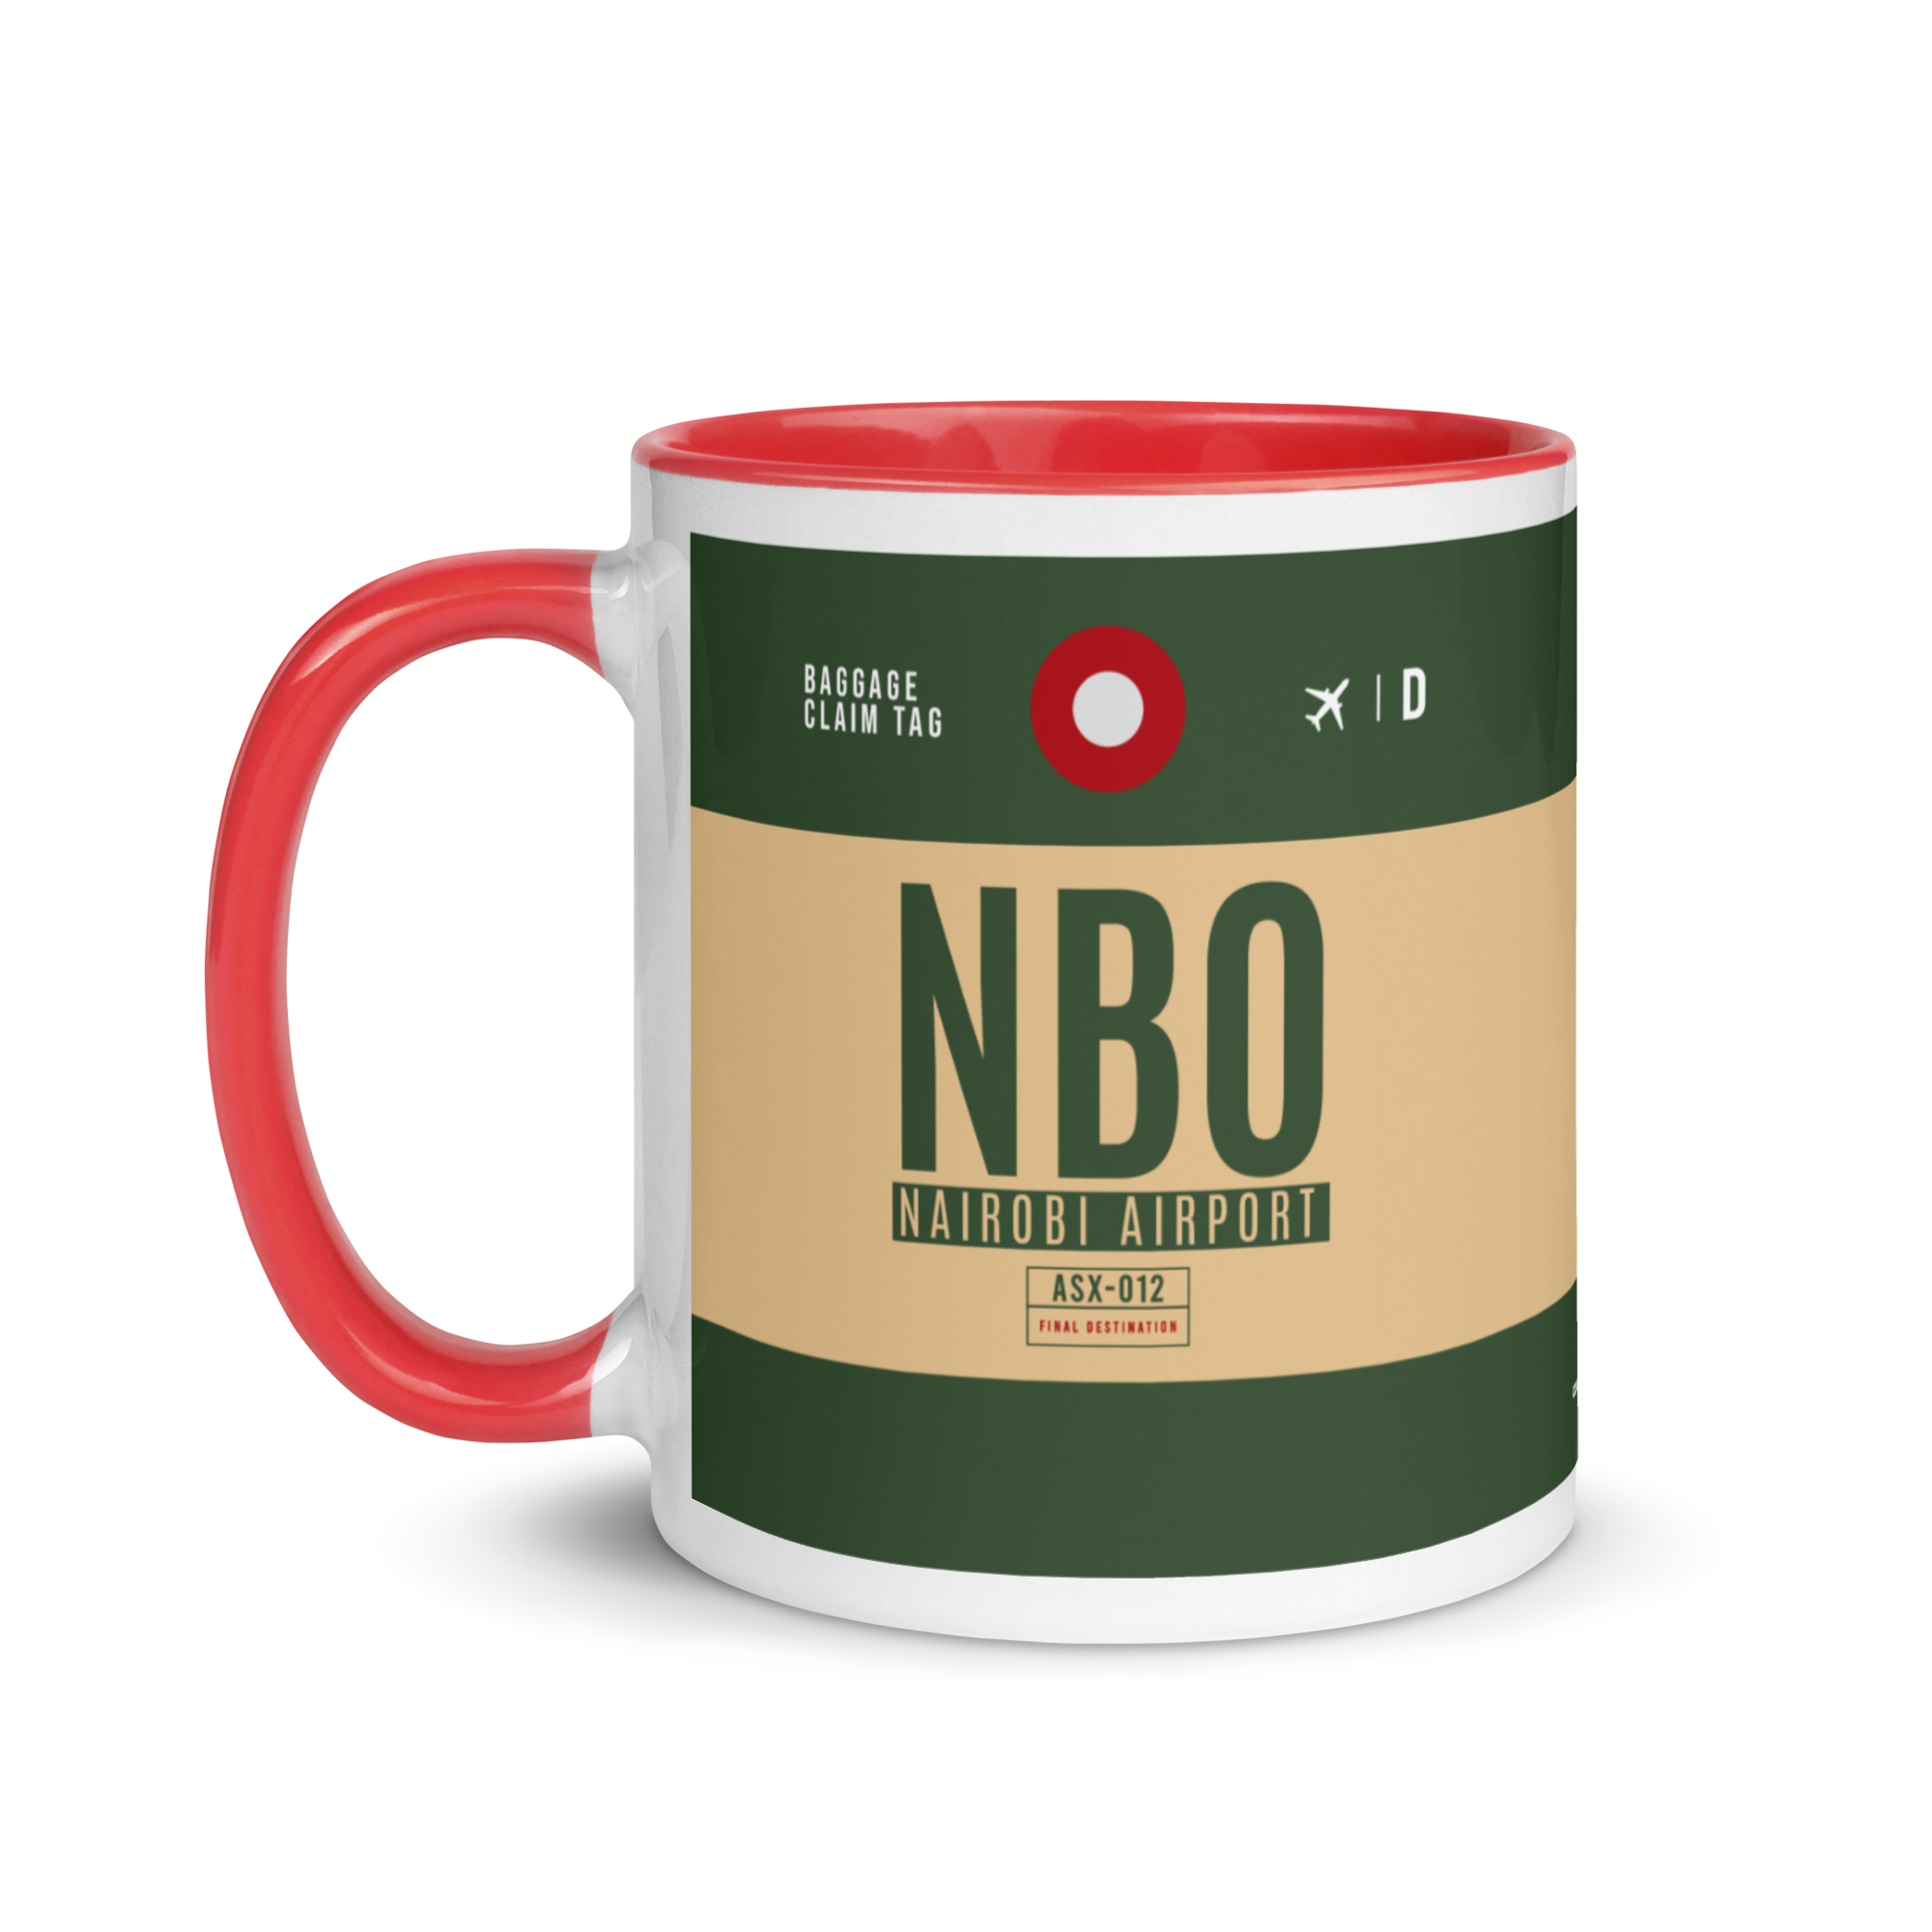 NBO - Nairobi Airport Code Mug with colored interior